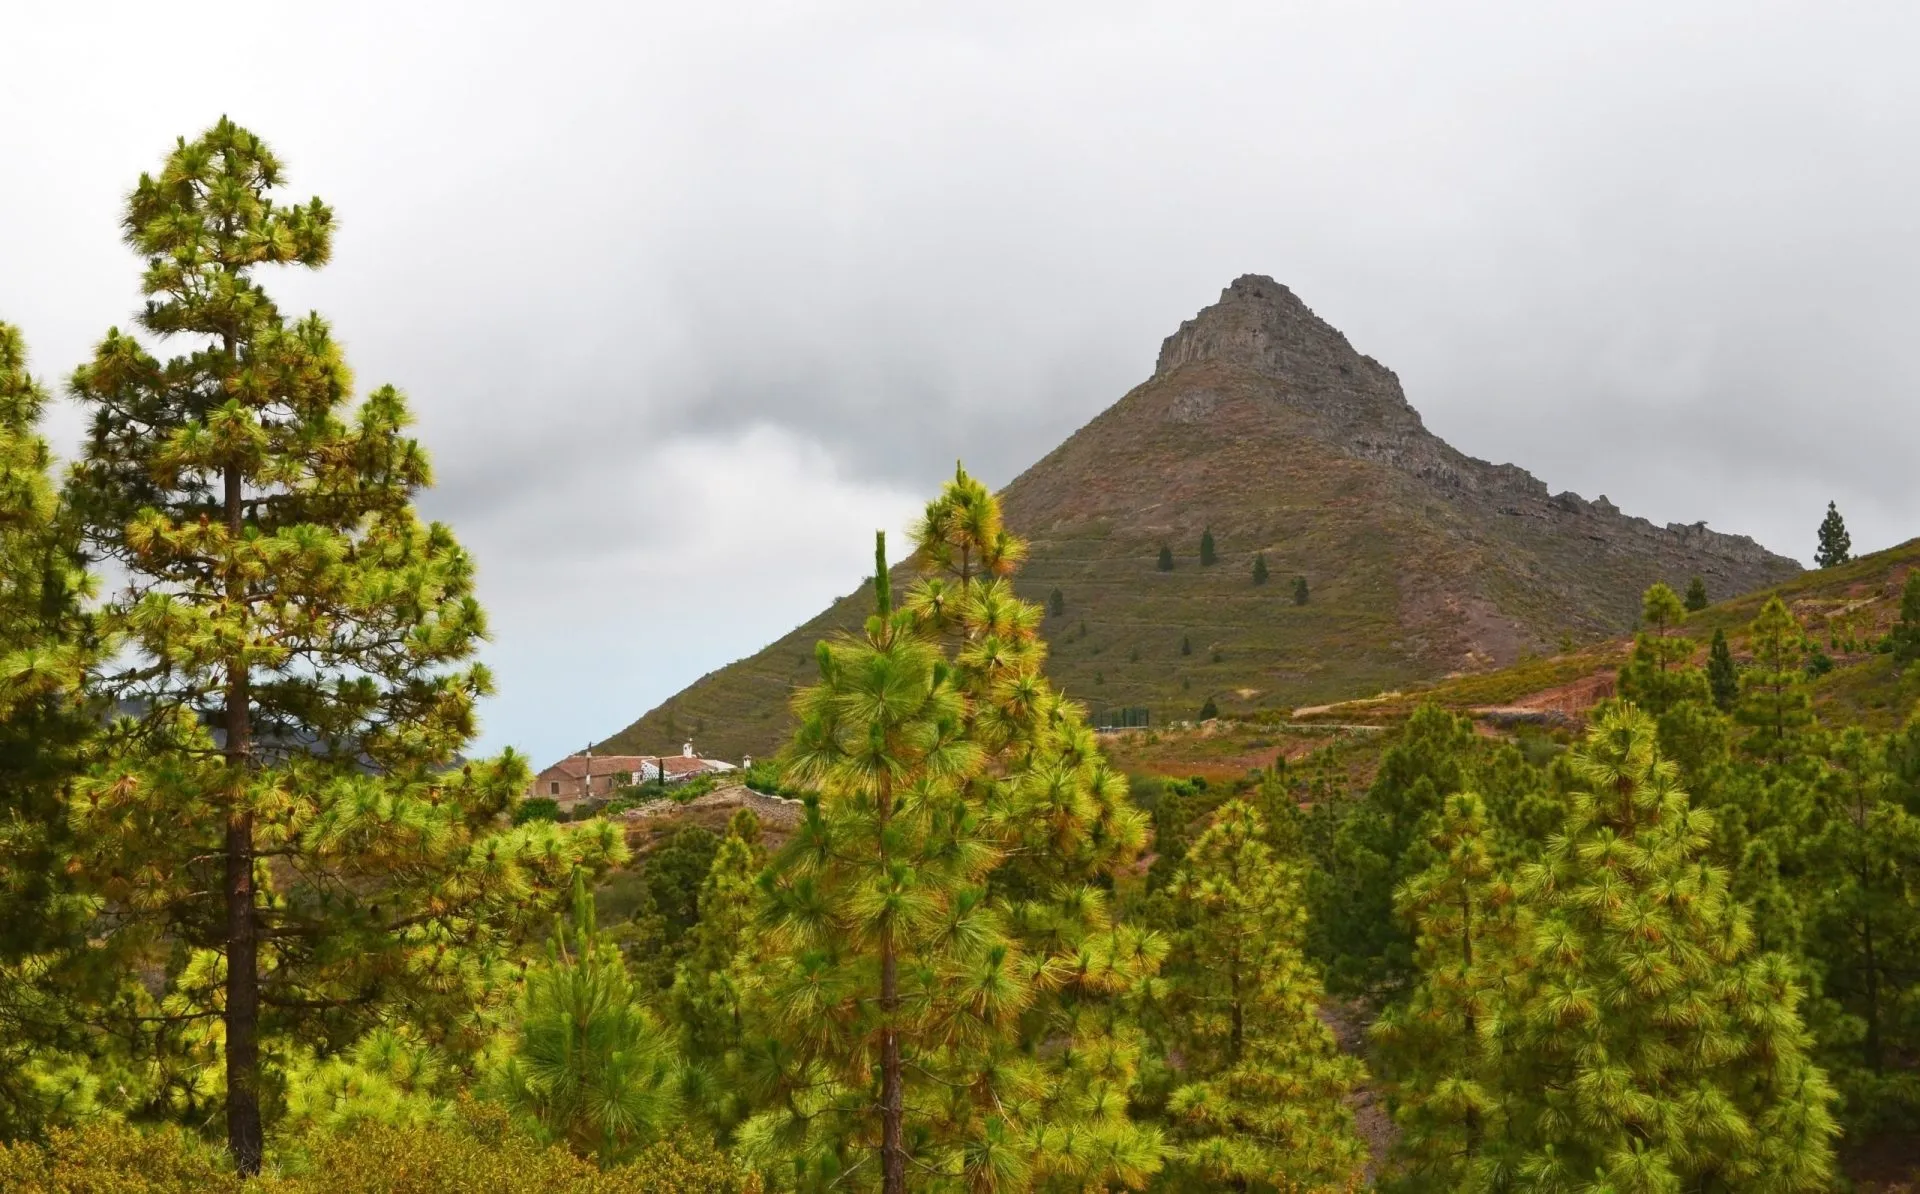 Vakker utsikt over landskapet rundt Imoque-fjellet med kanariske furutrær i Ifonche,Tenerife,Kanariøyene,Spania.selektivt fokus.